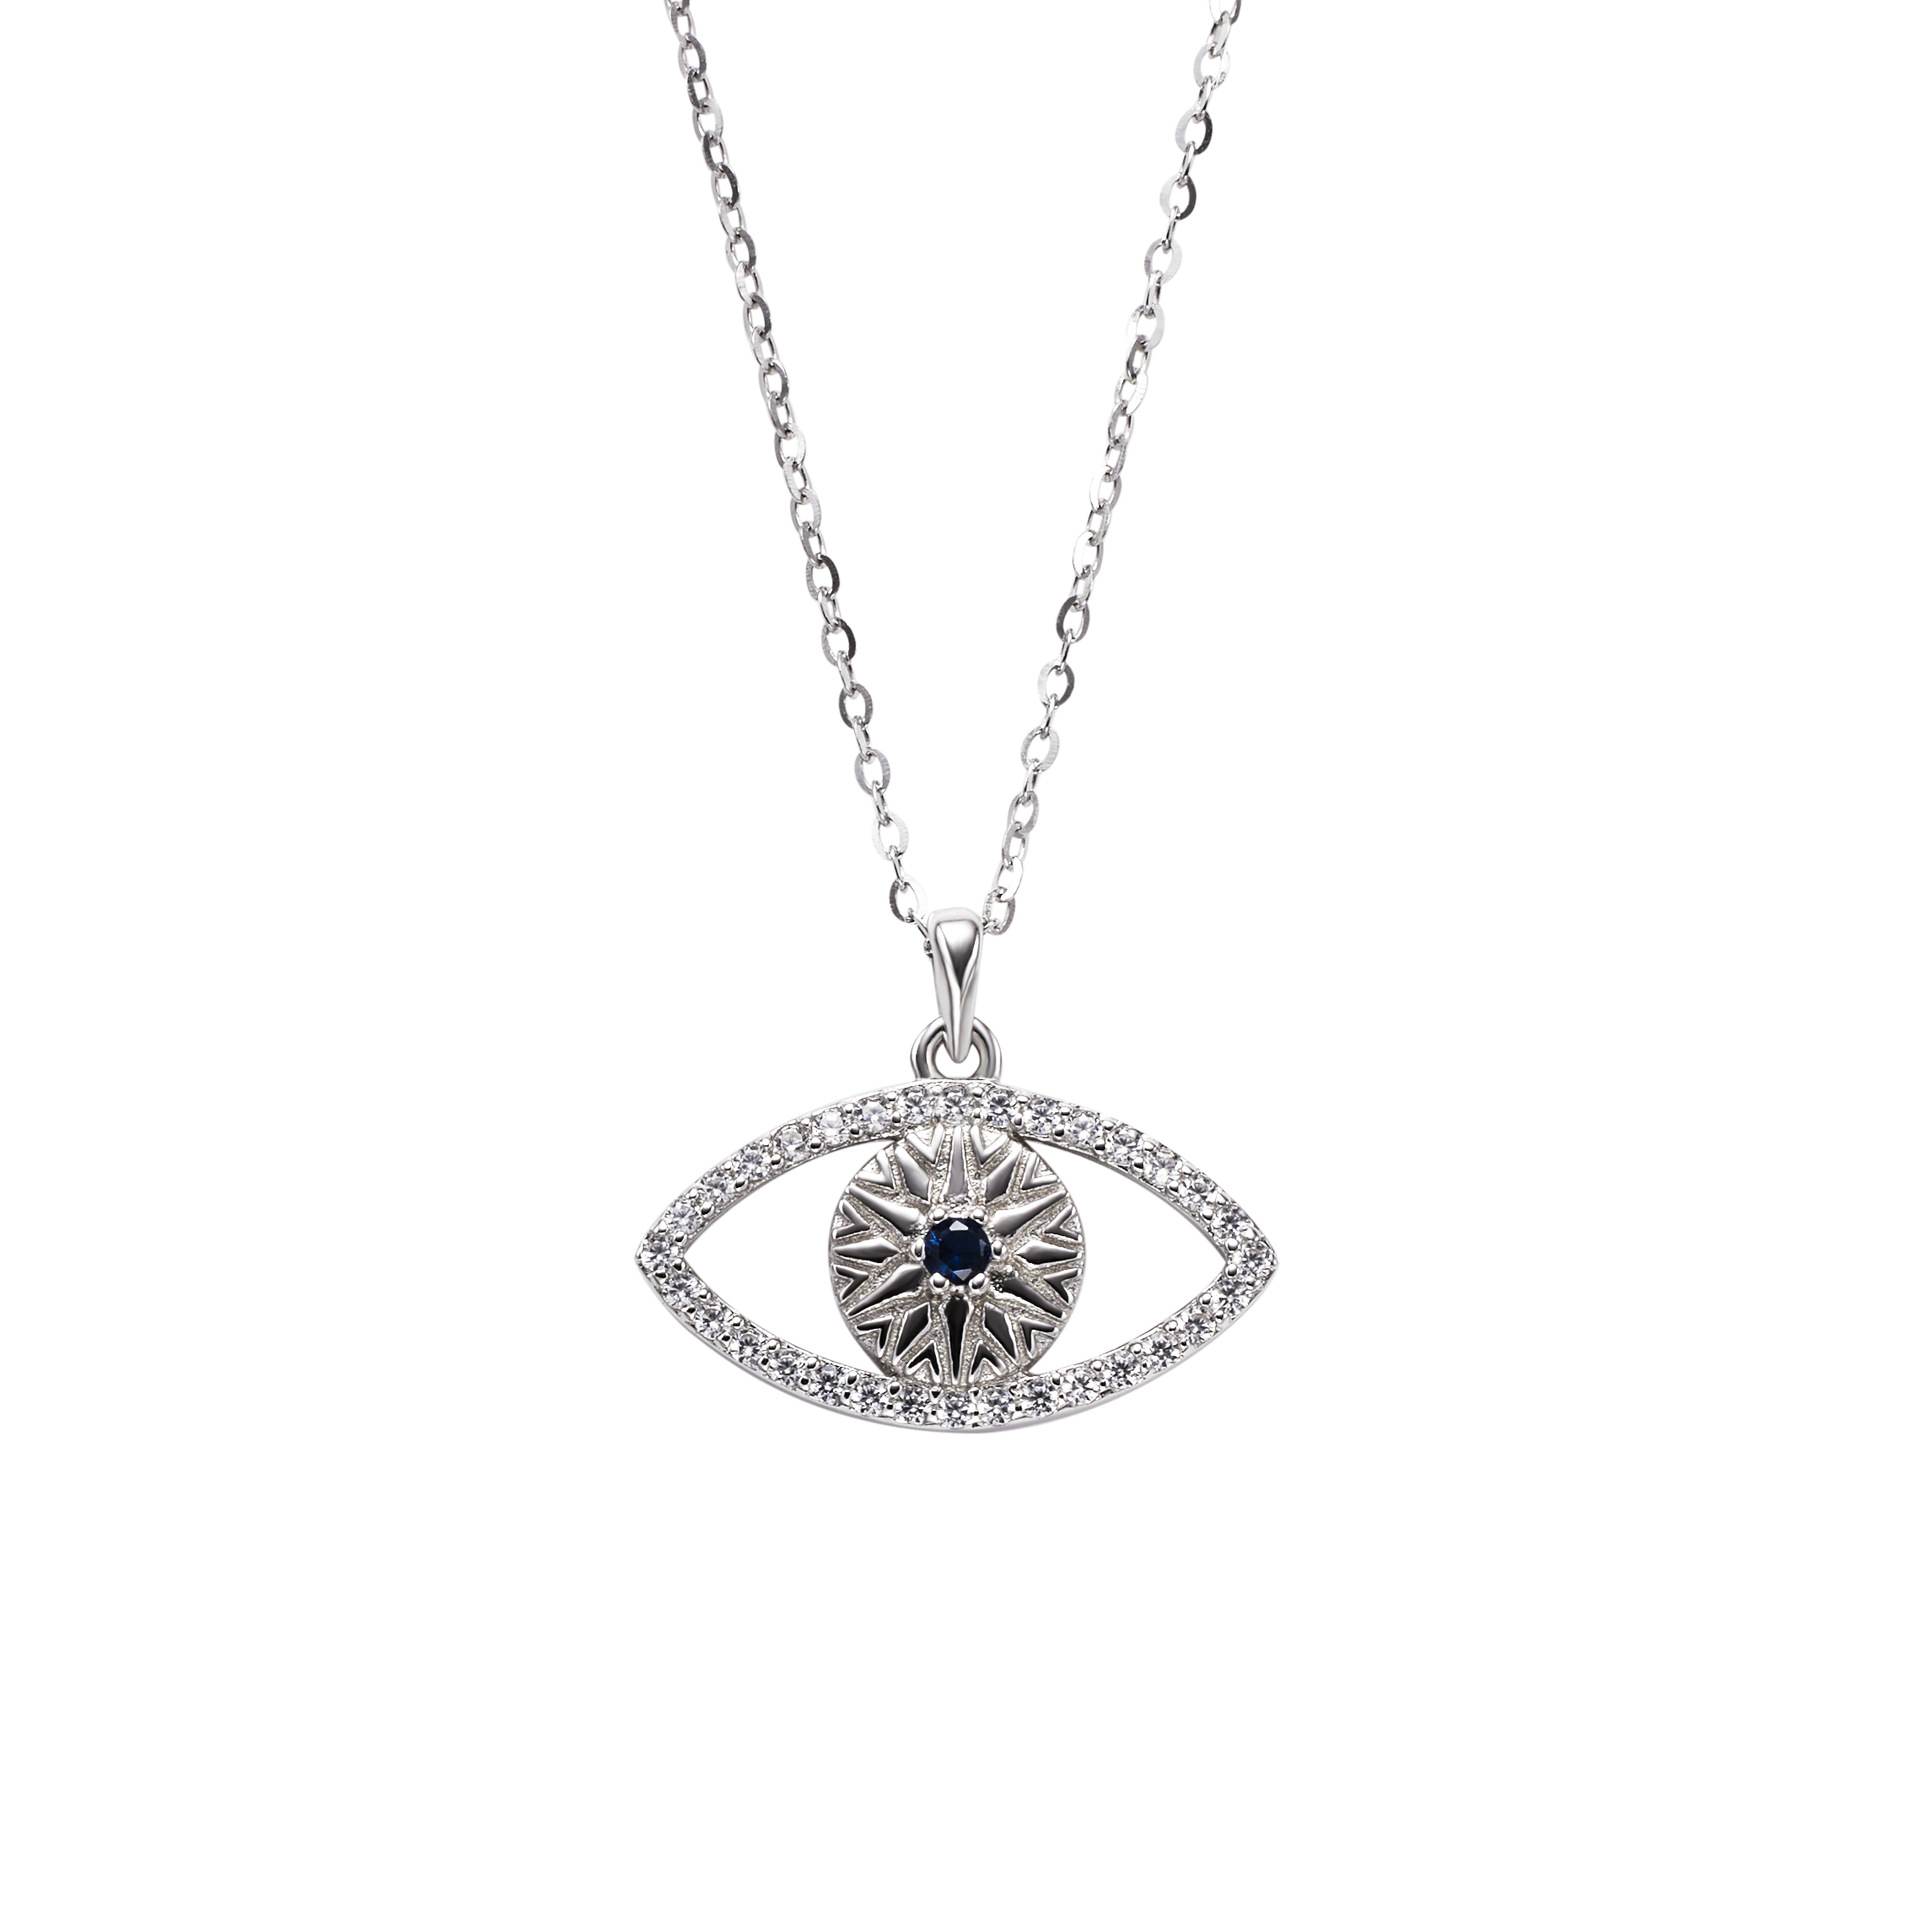 Cz Devil's Eye Round Sterling Silver Pendant Necklace